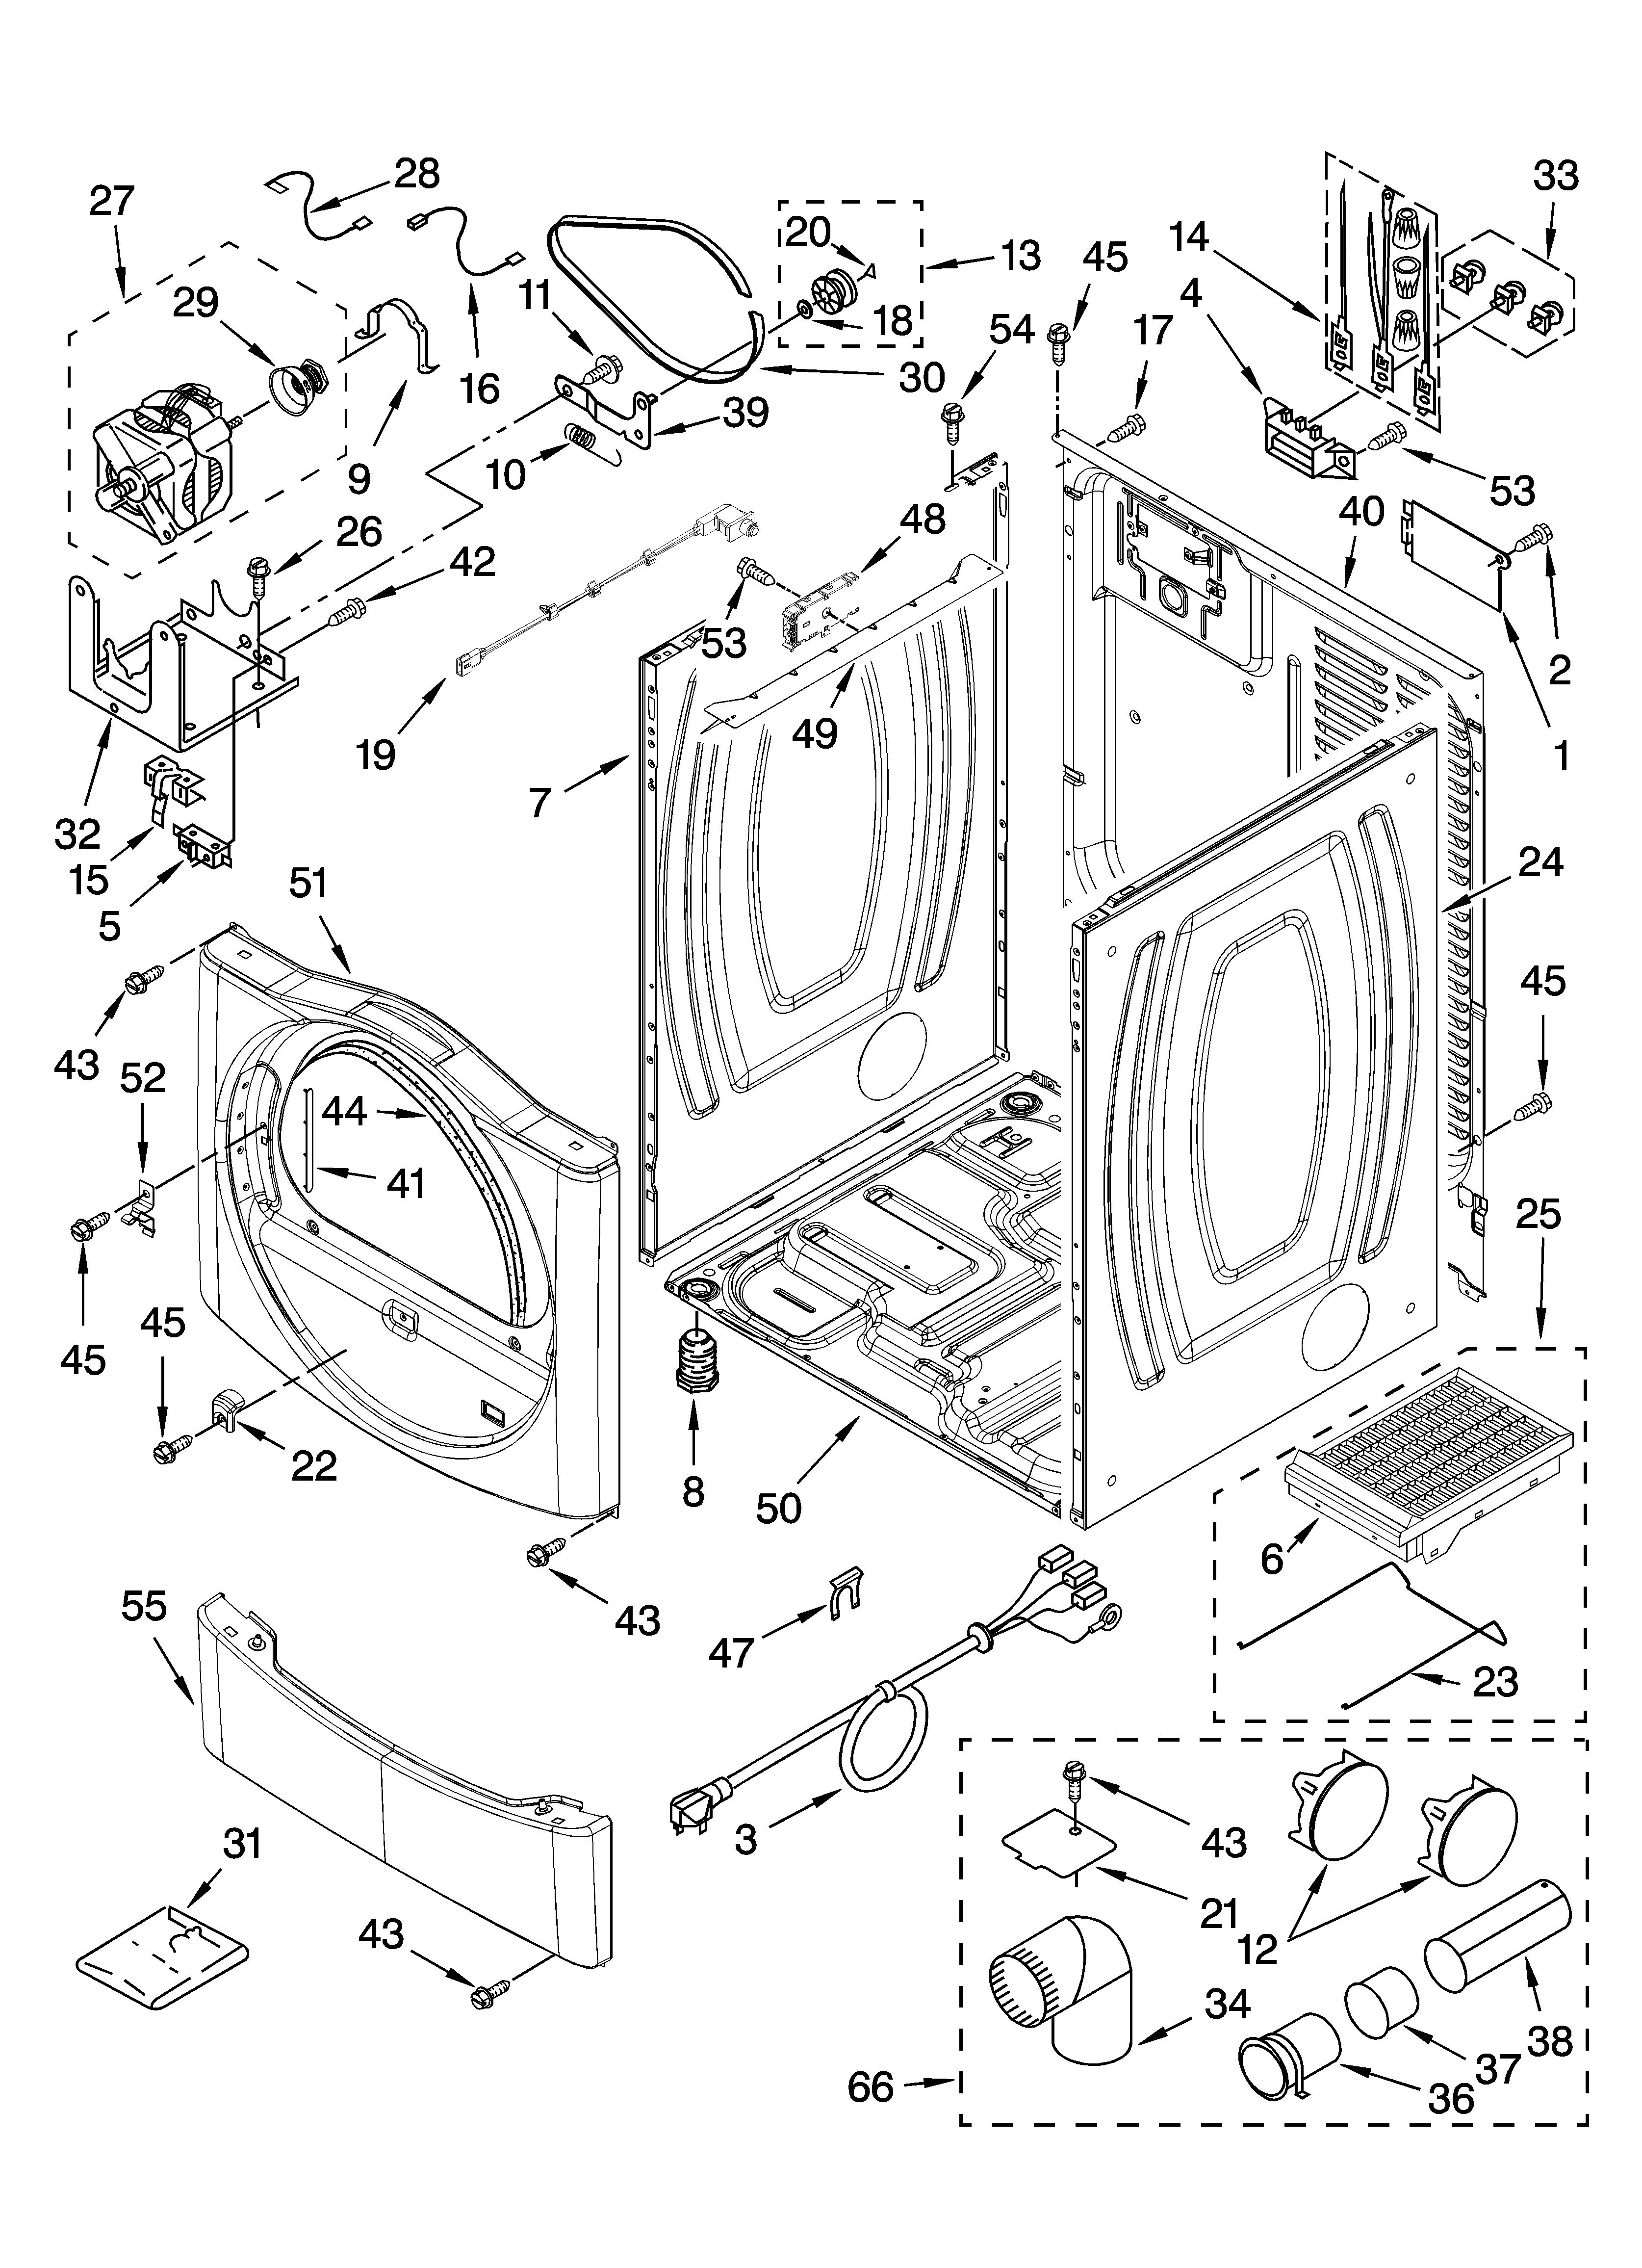 Cabinet Parts Diagram  U0026 Parts List For Model 110c87572601